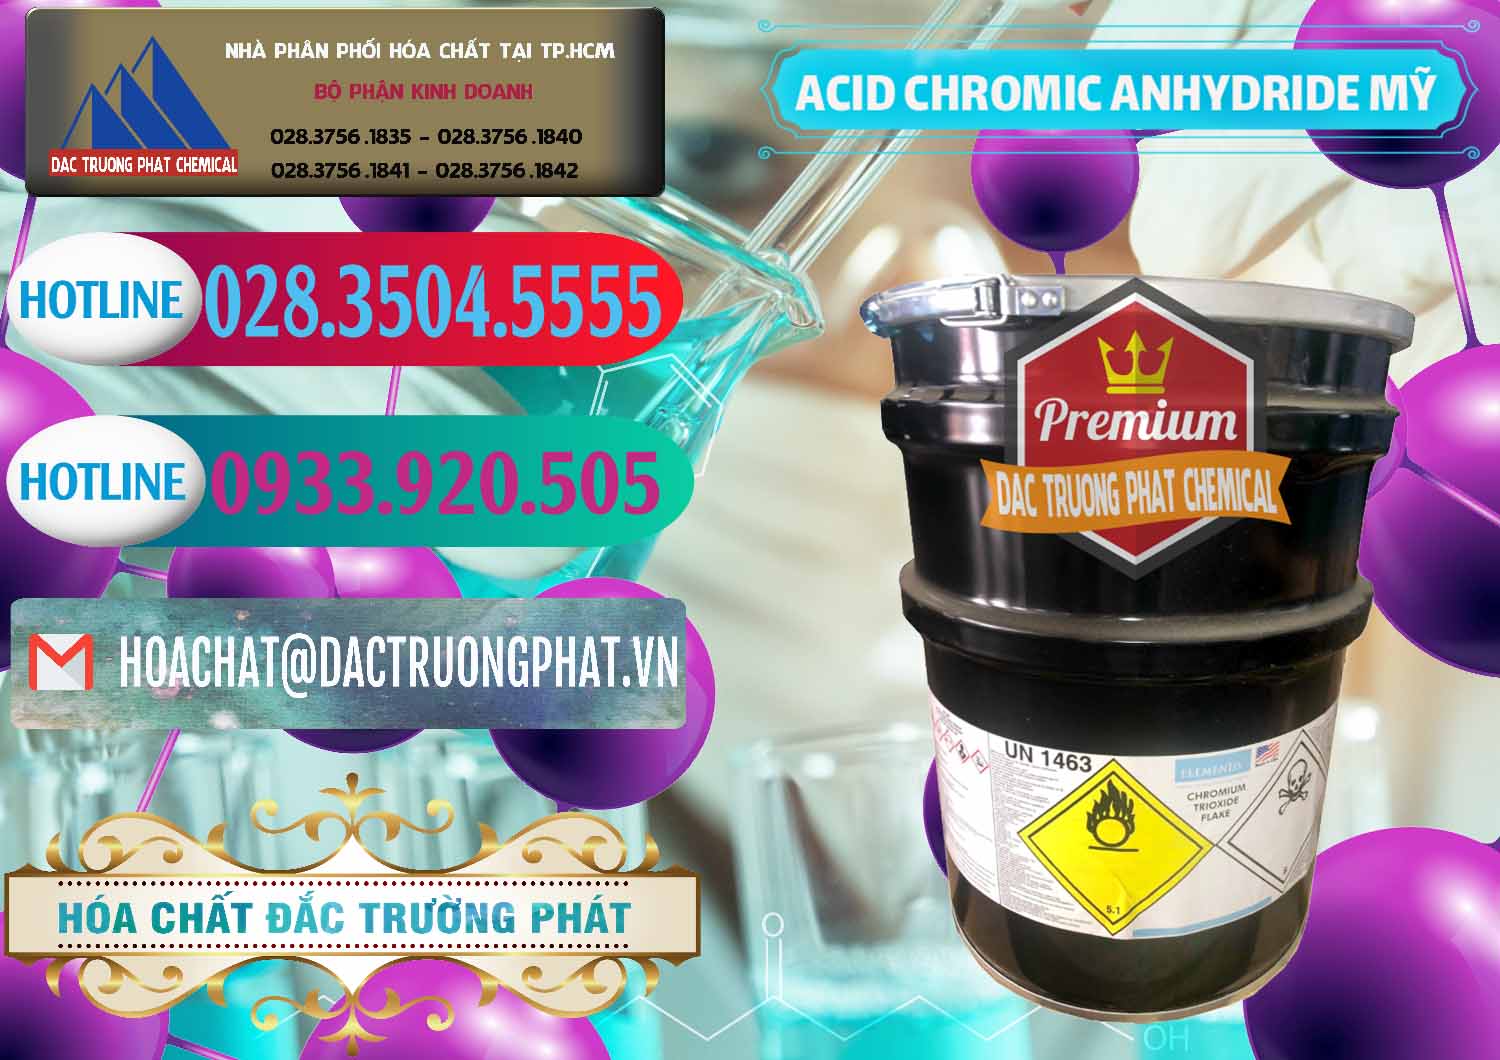 Cty chuyên bán và phân phối Acid Chromic Anhydride - Cromic CRO3 USA Mỹ - 0364 - Nhà nhập khẩu & cung cấp hóa chất tại TP.HCM - truongphat.vn